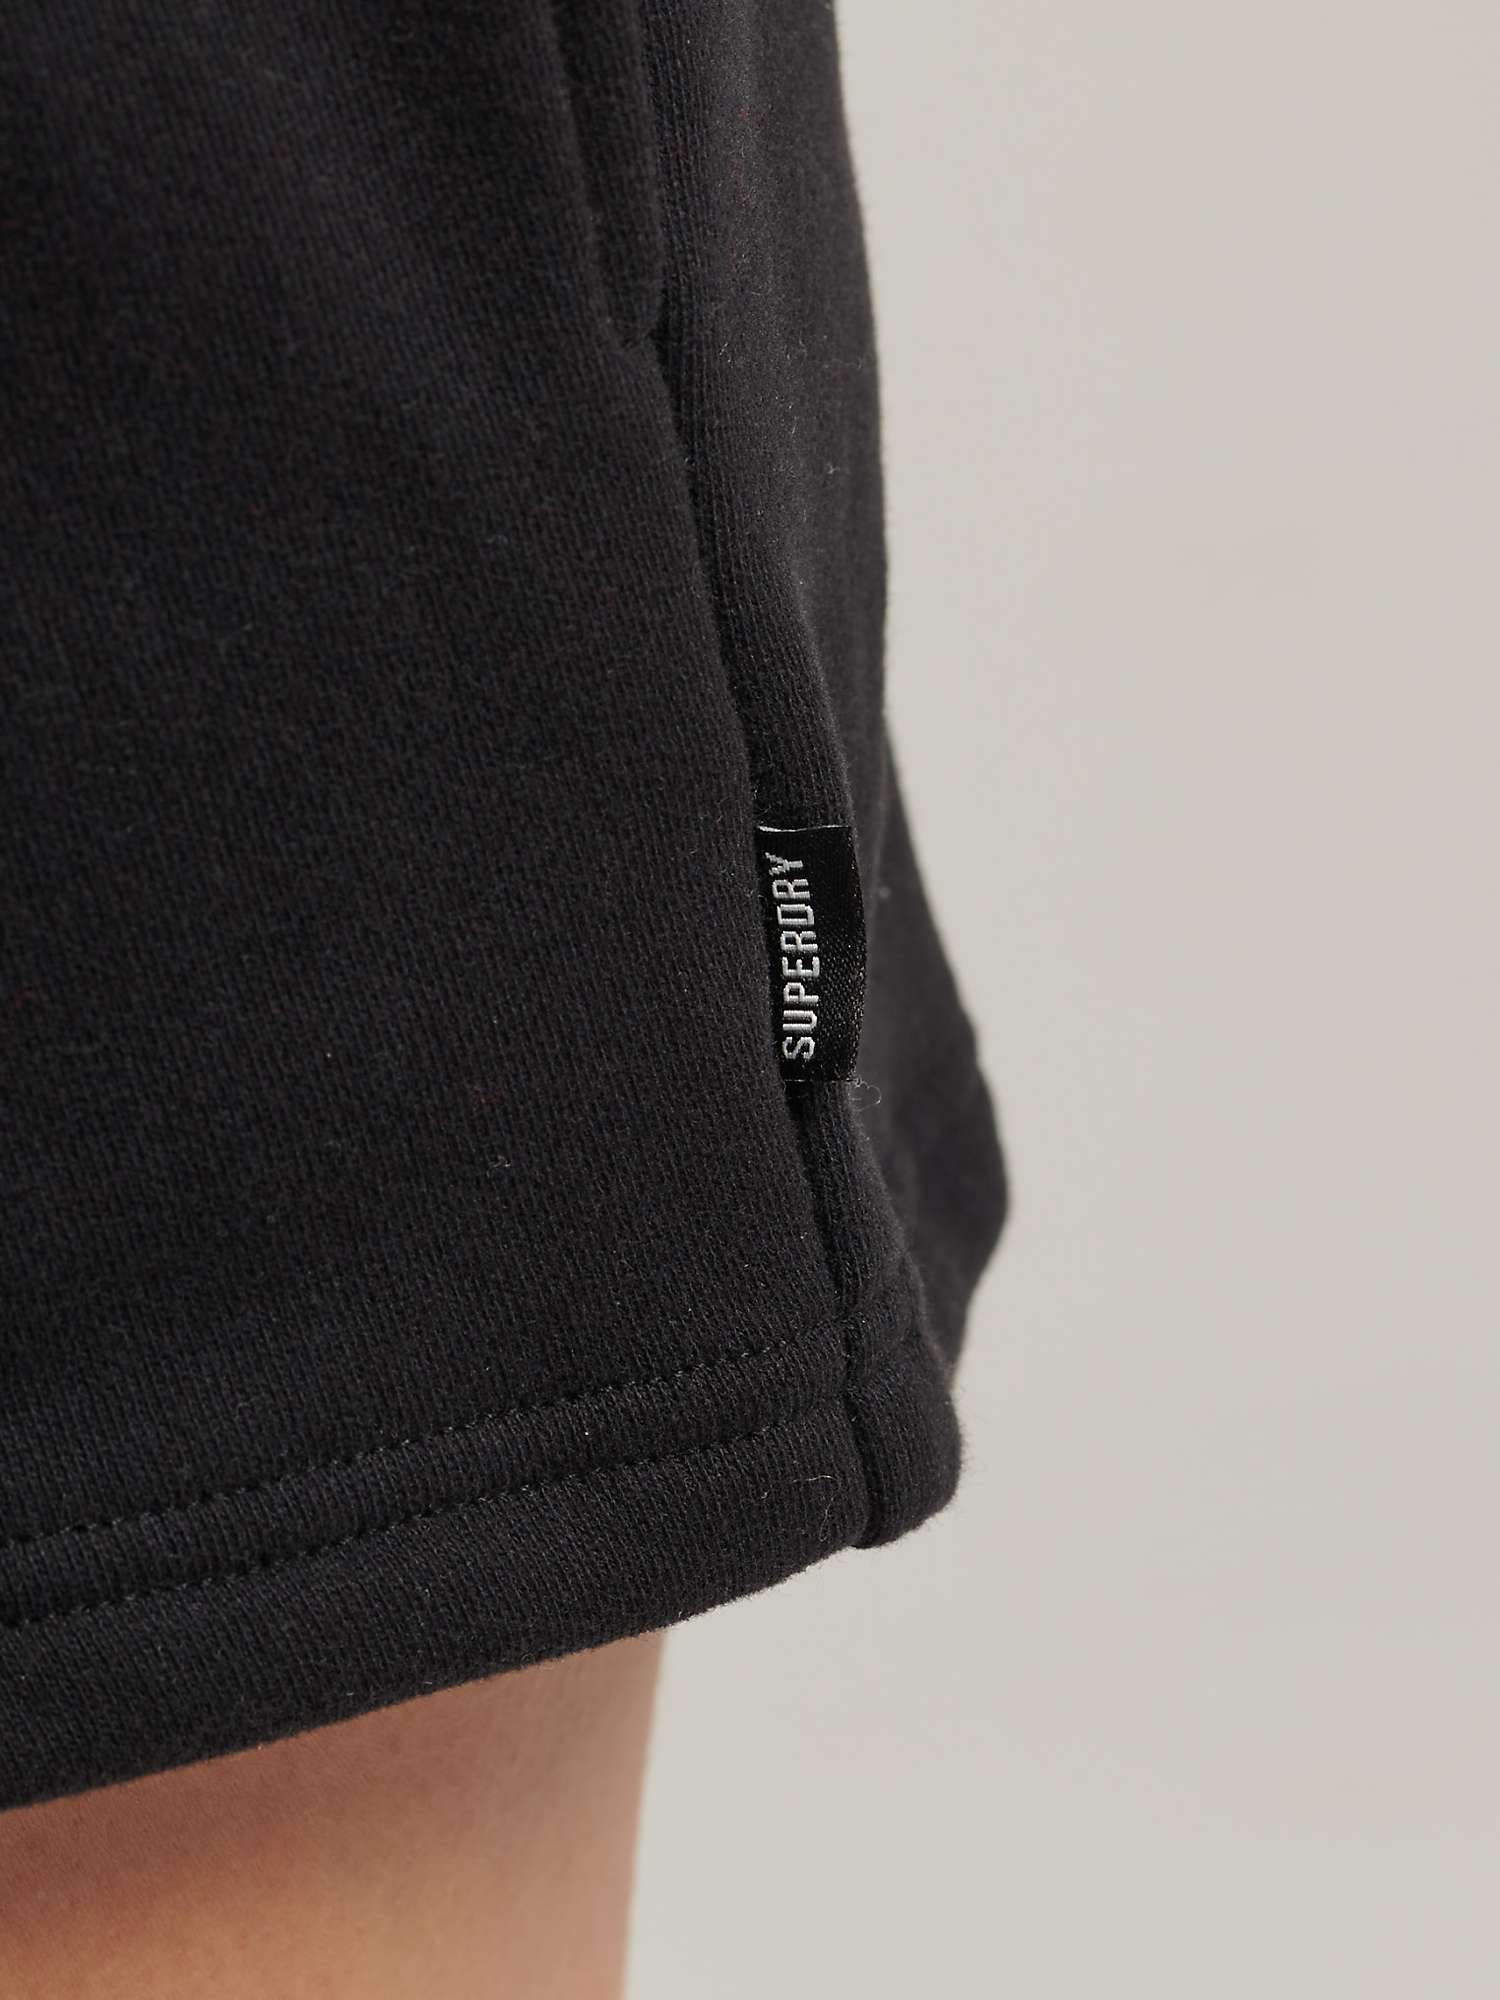 Buy Superdry Logo Jersey Shorts, Black Online at johnlewis.com